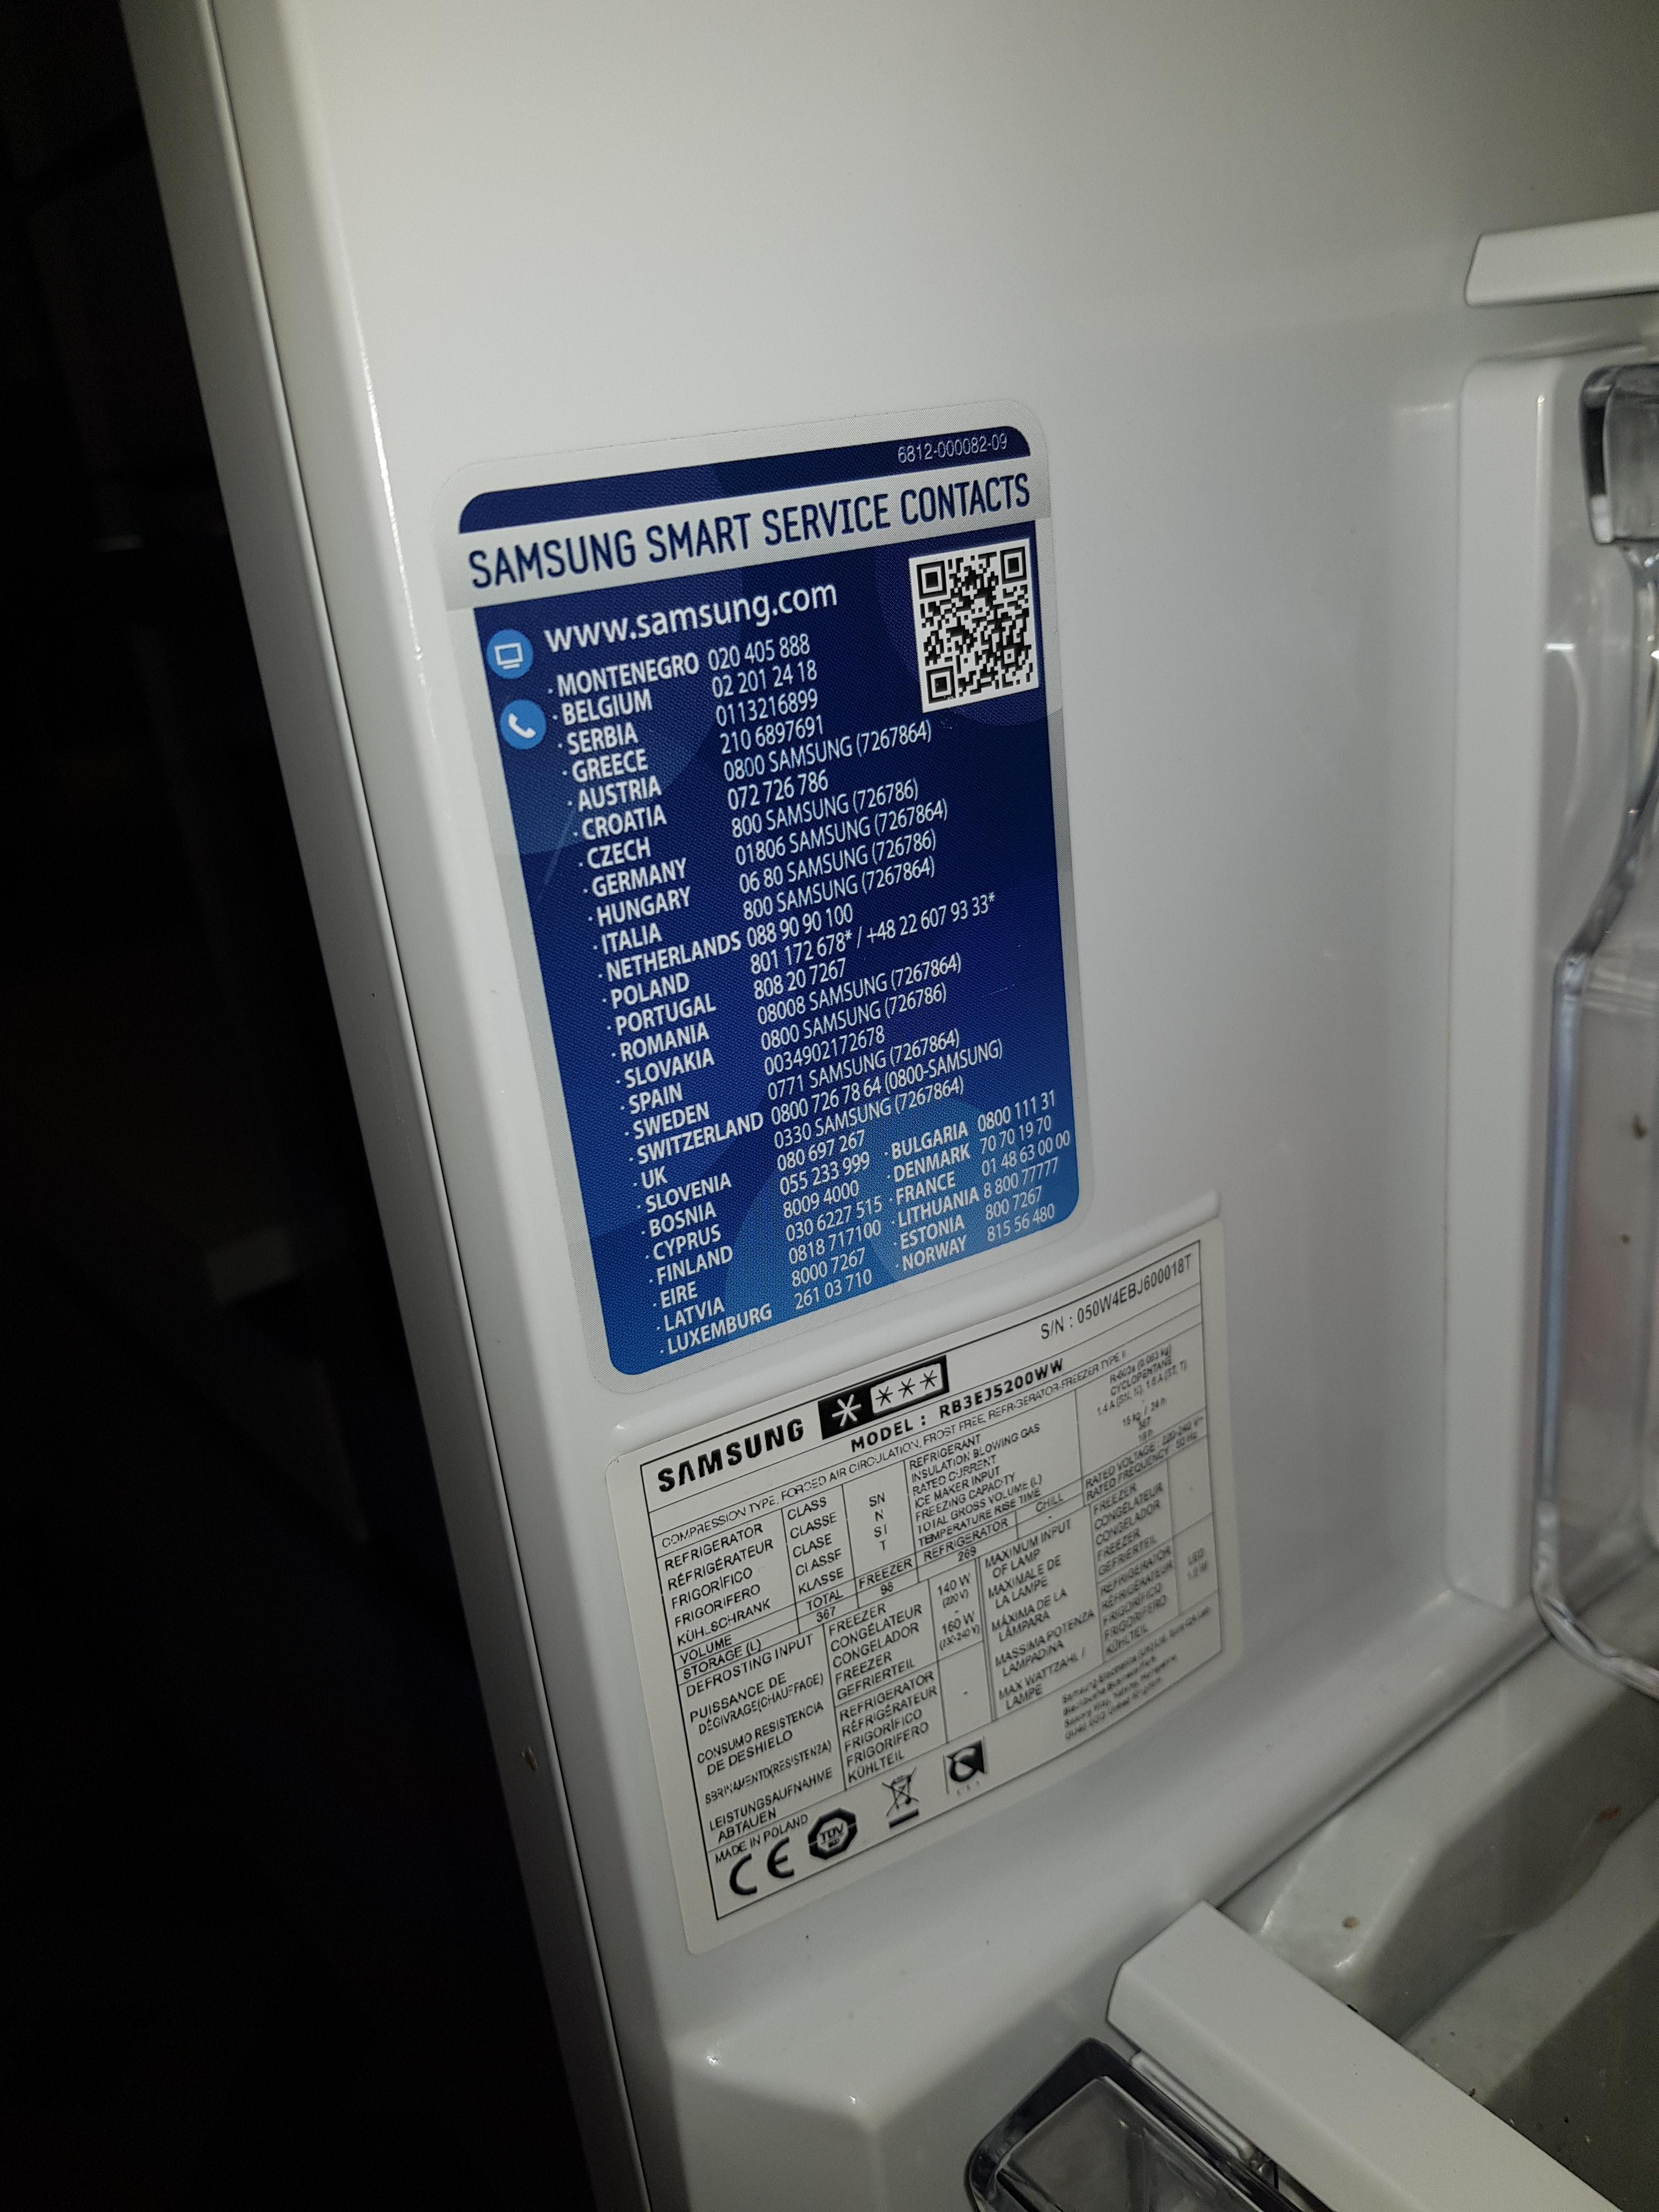 Réfrigérateur congélateur bas SAMSUNG RL56GSBMG Pas Cher 